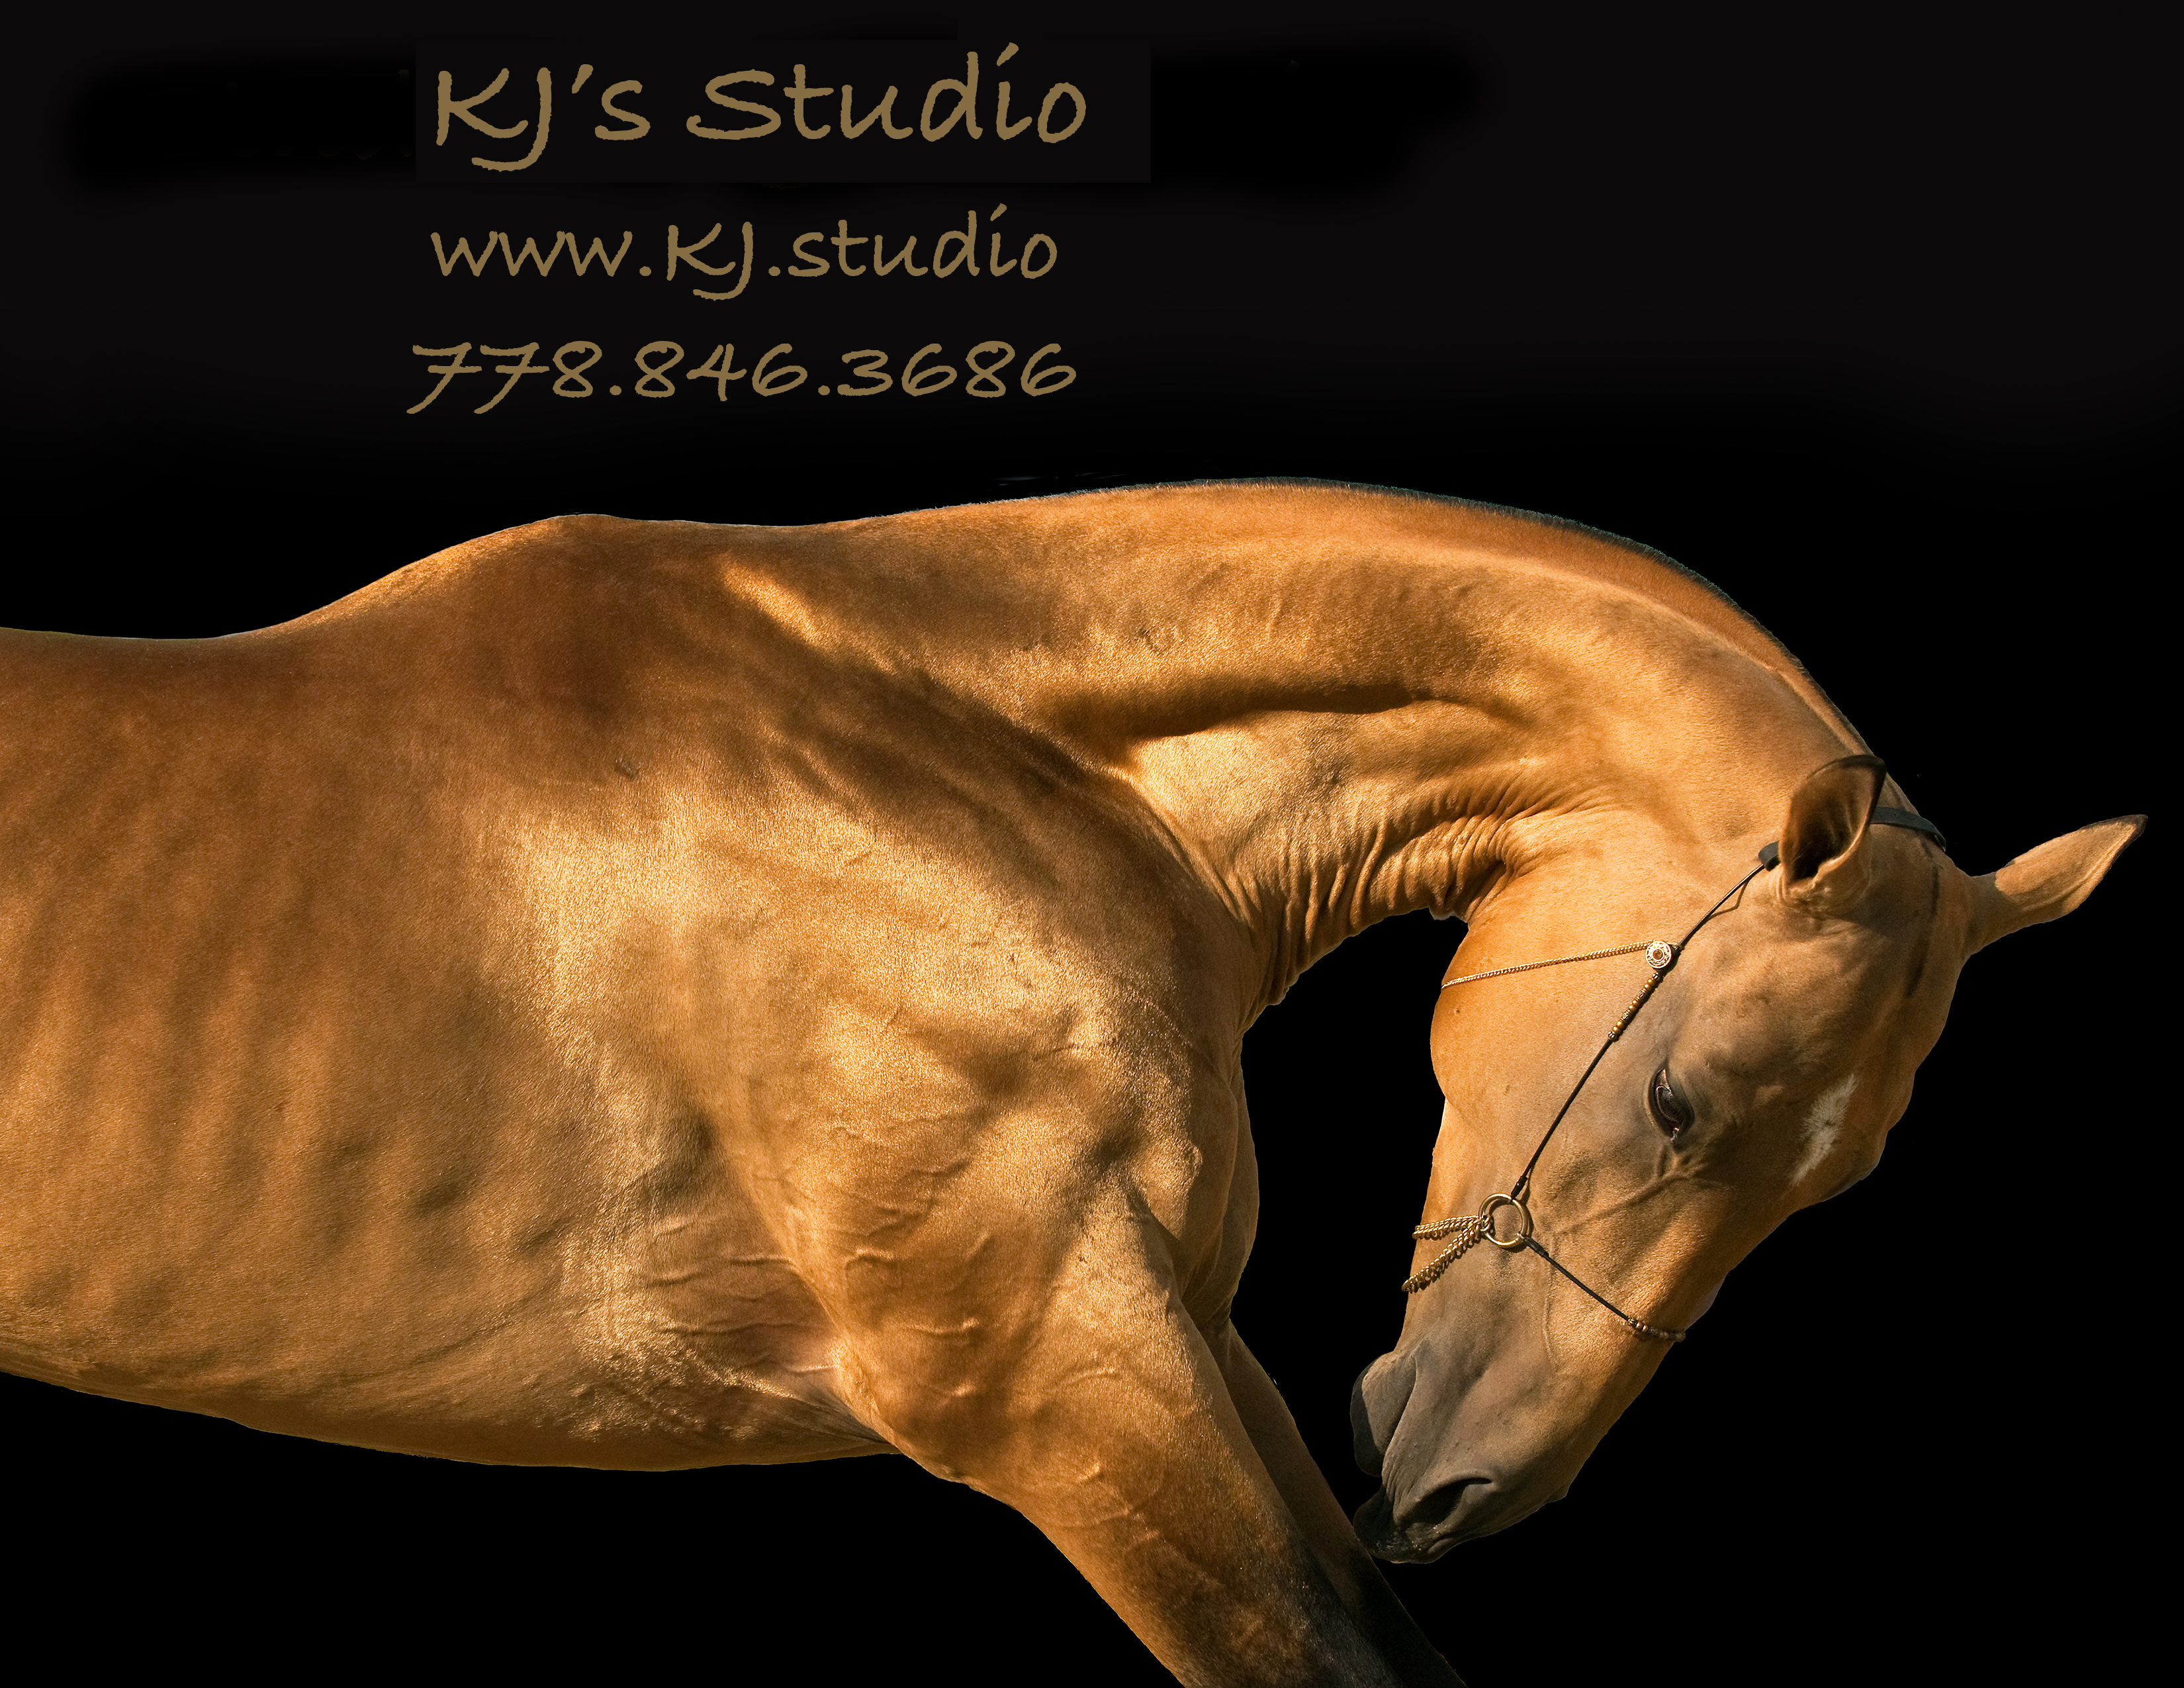 KJ’s Studio